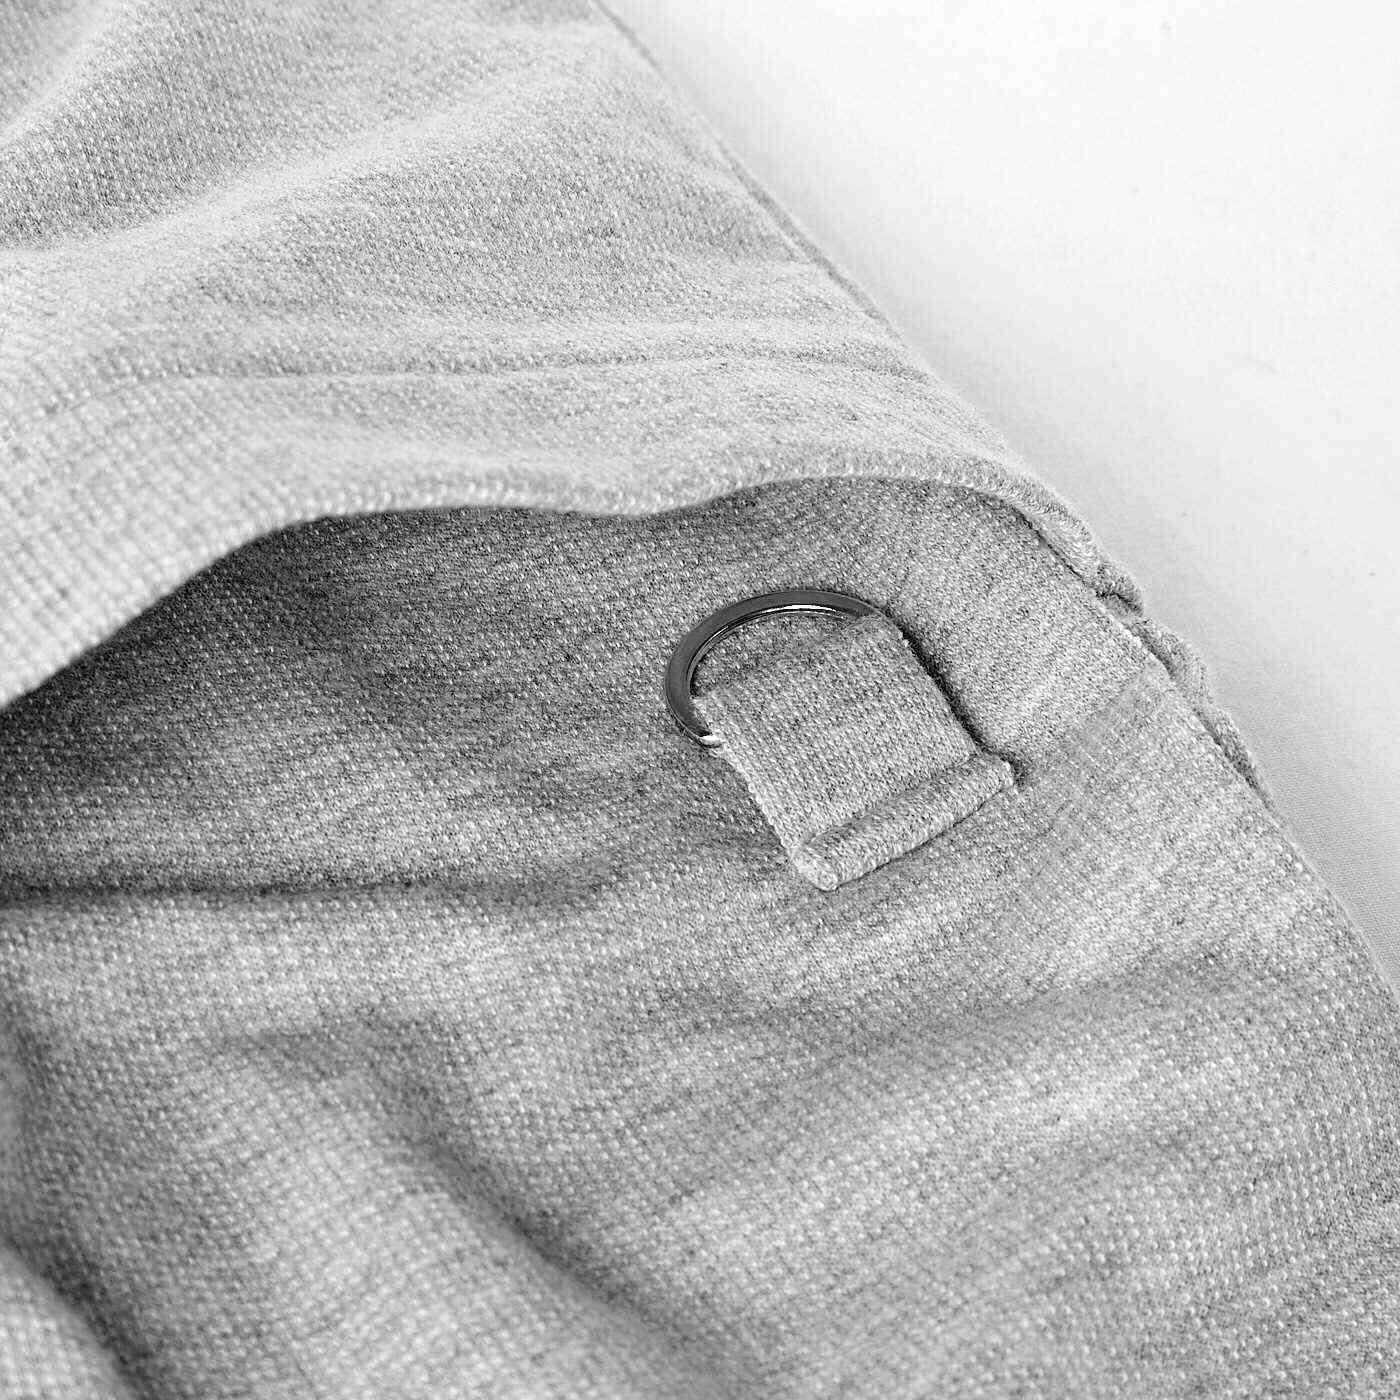 Real Stock|UP.de　着られるバッグ Tシャツ感覚なのにきれい見えする ポケットいっぱい てぶらなカットソースキッパーシャツ〈杢（もく）グレー〉|前ポケットにはDカン付き。